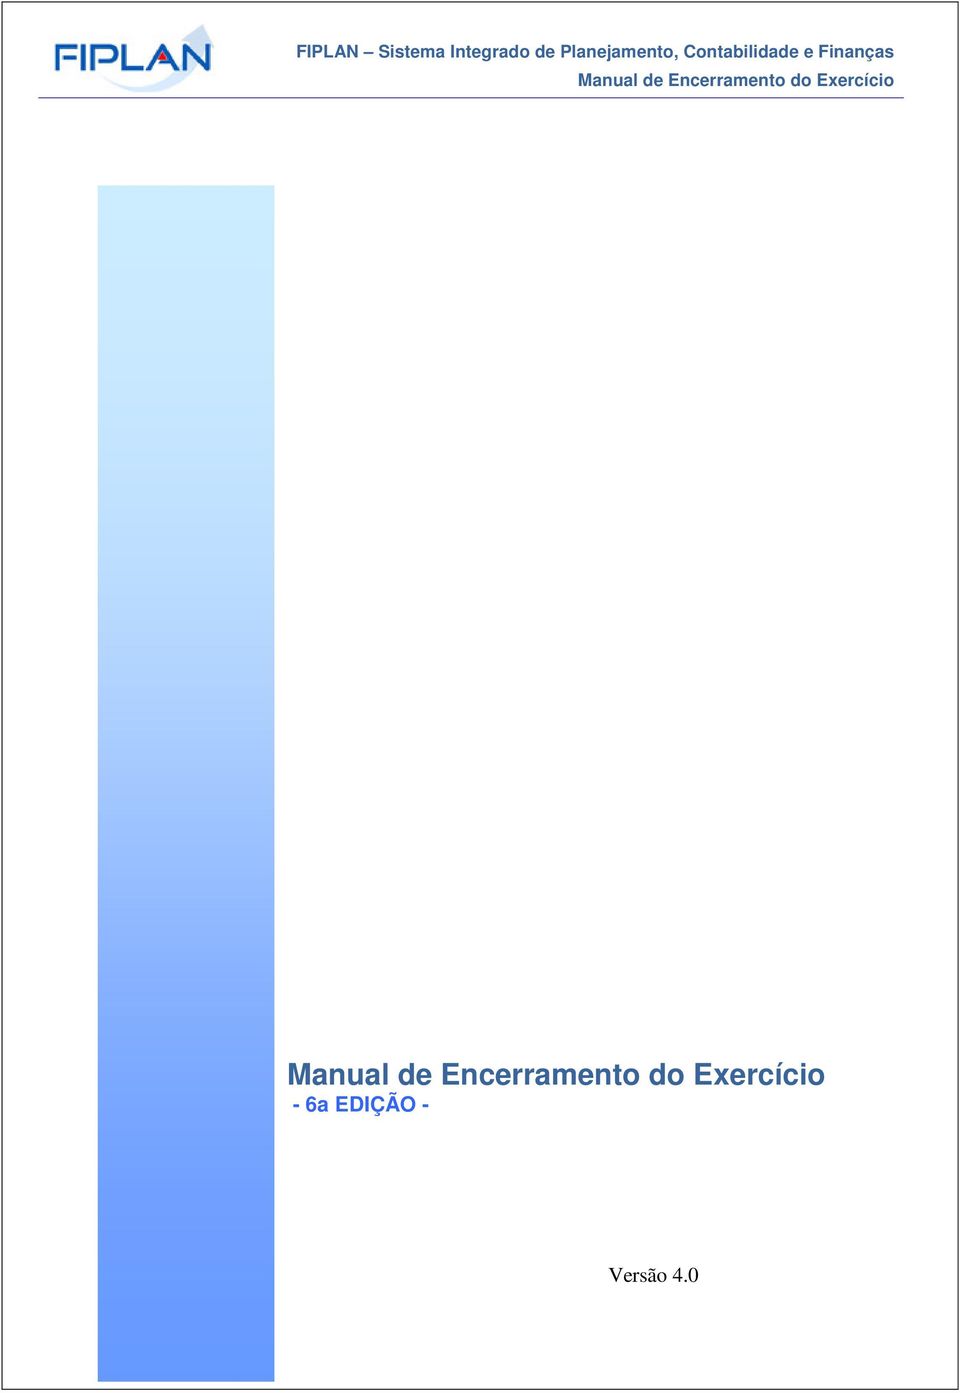 Manual de Encerramento do Exercício